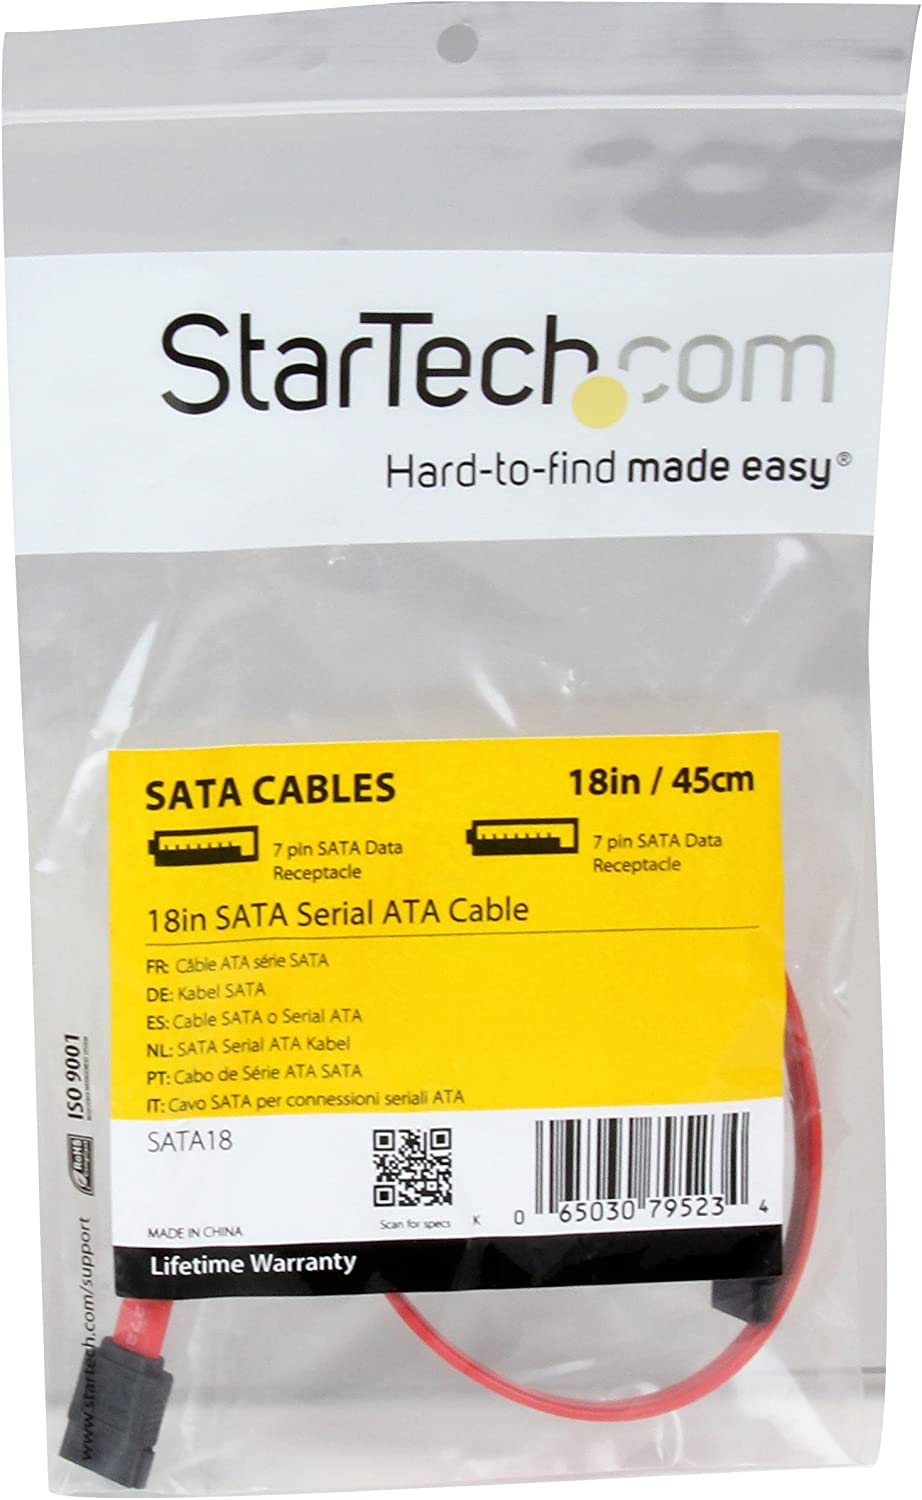 StarTech.com 18in SATA Serial ATA Cable - 18in SATA Cable - 18 SATA Cable - 18in Serial ata Cable (SATA18) 18 Inch Standard